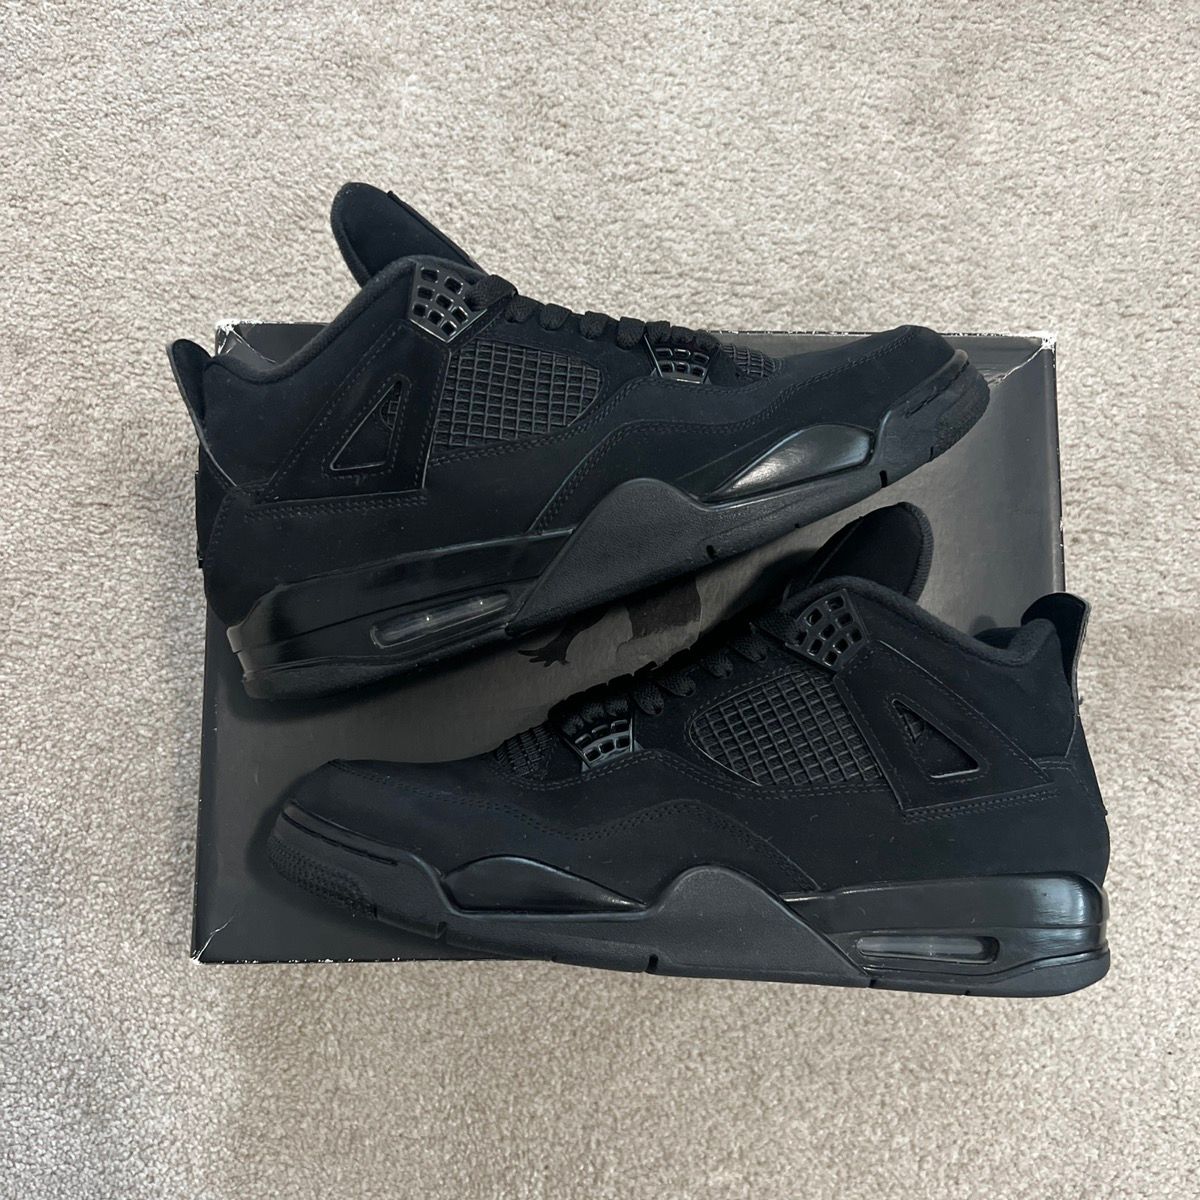 Pre-owned Jordan Nike Jordan 4 Black Cat Shoes